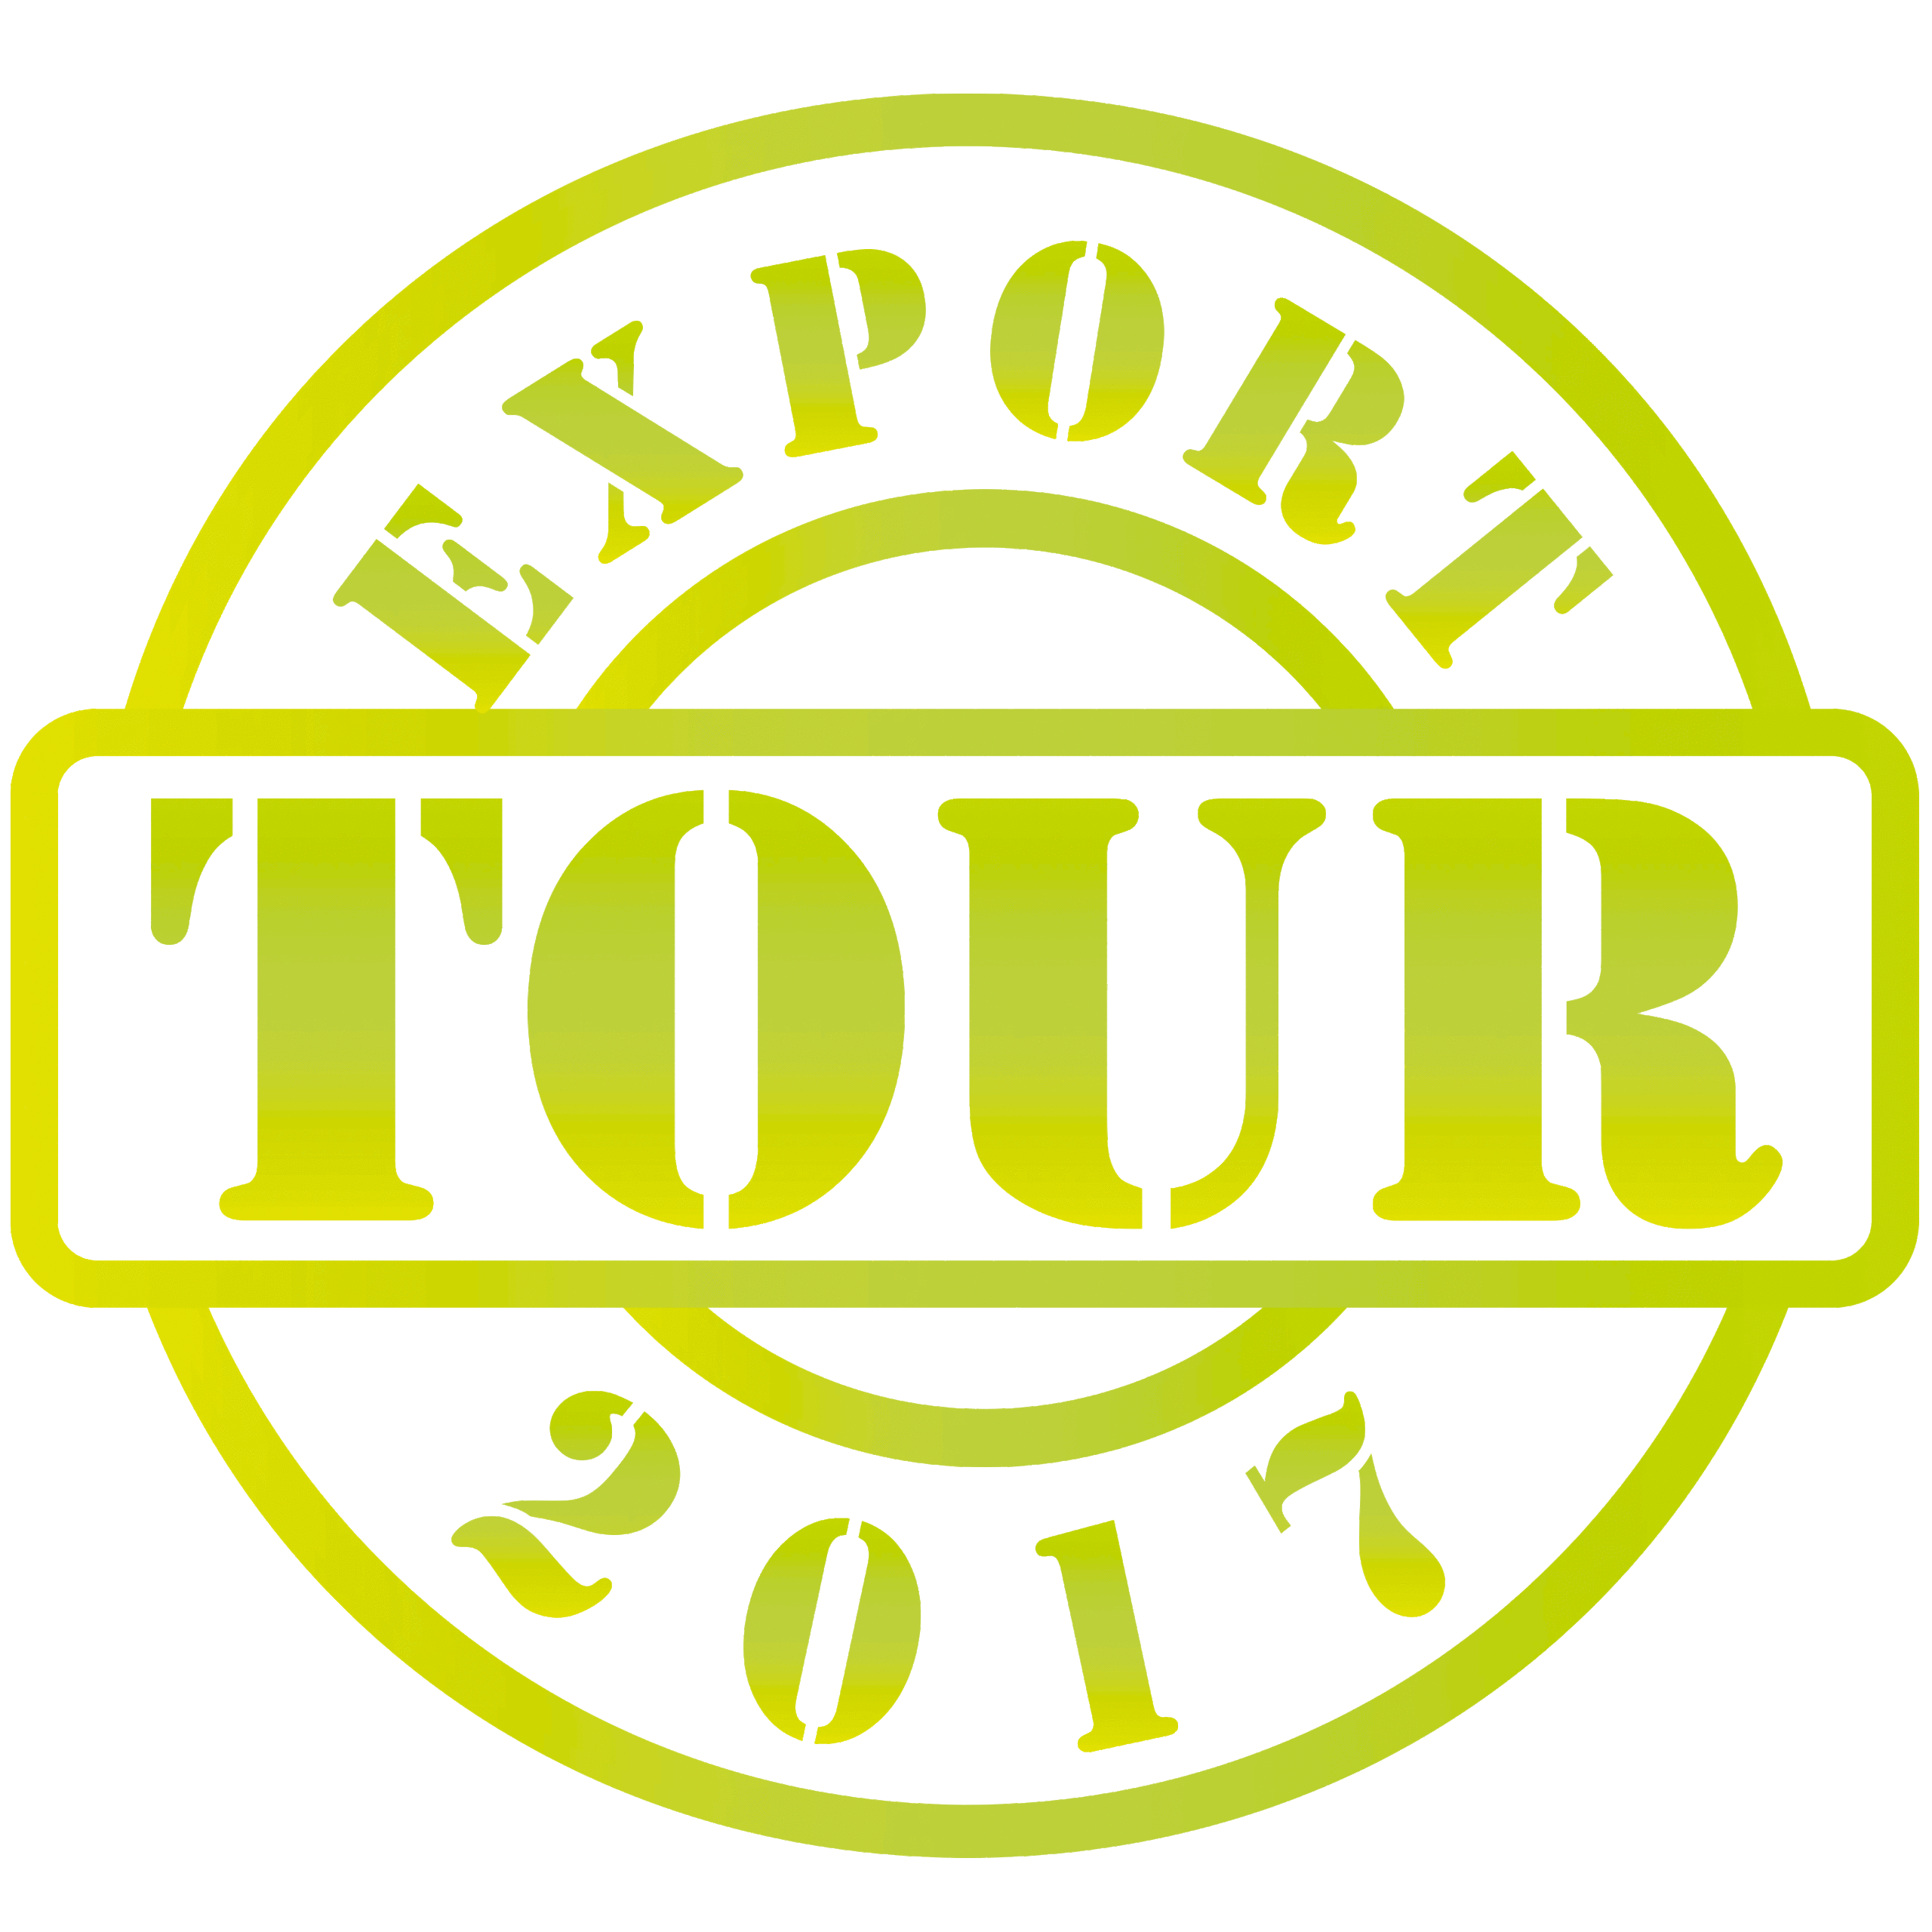 Export Tour 2017